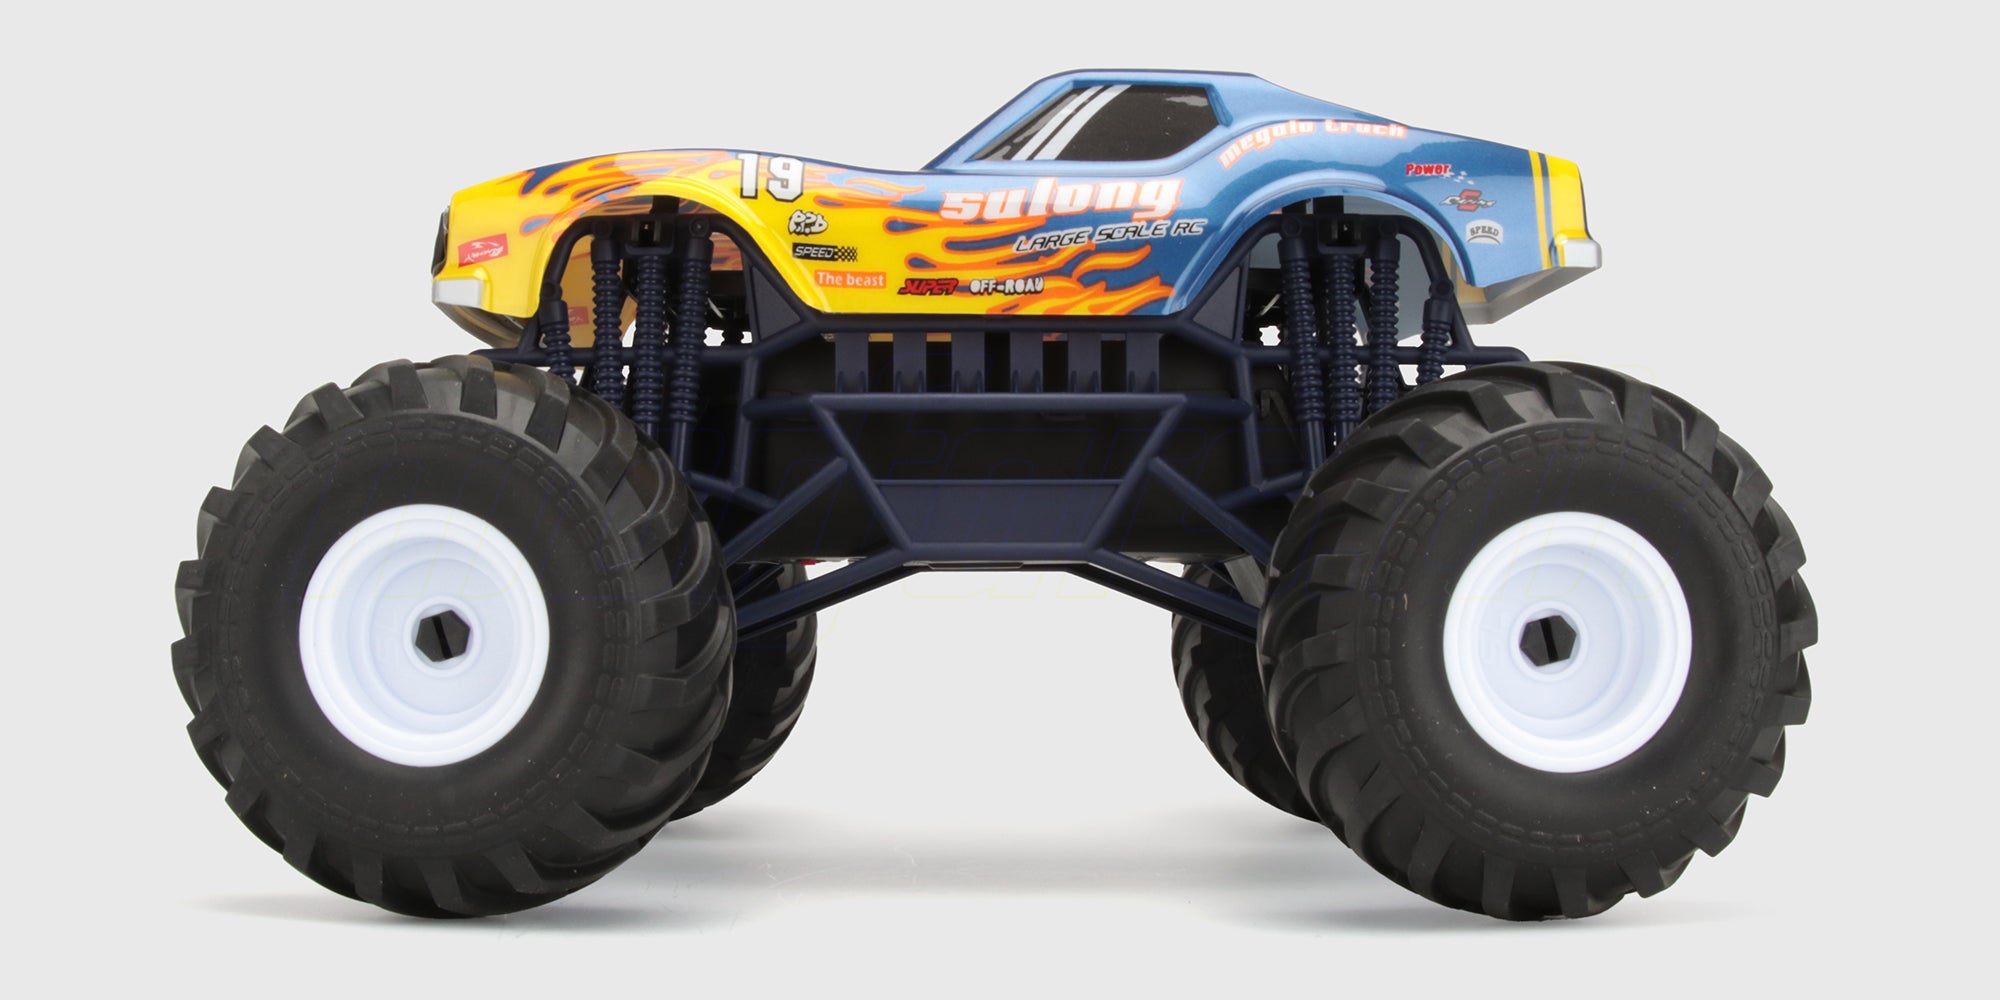 Super flot fjernstyret monster truck til børn